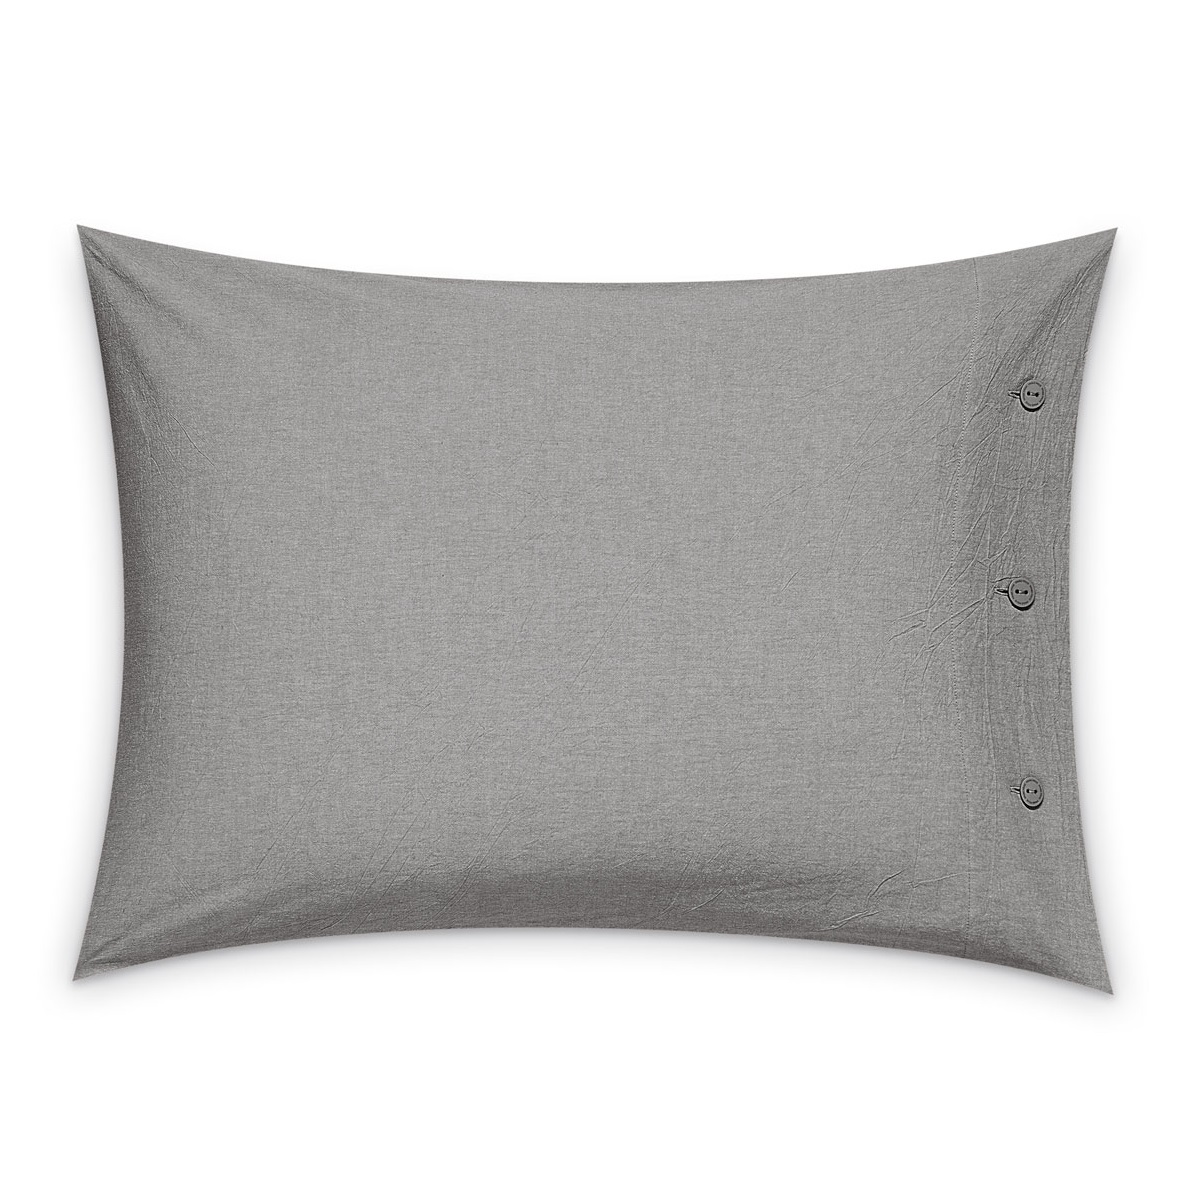 Комплект постельного белья Prime Prive Смоген Двуспальный кинг сайз тёмно-серый, размер Кинг сайз - фото 8